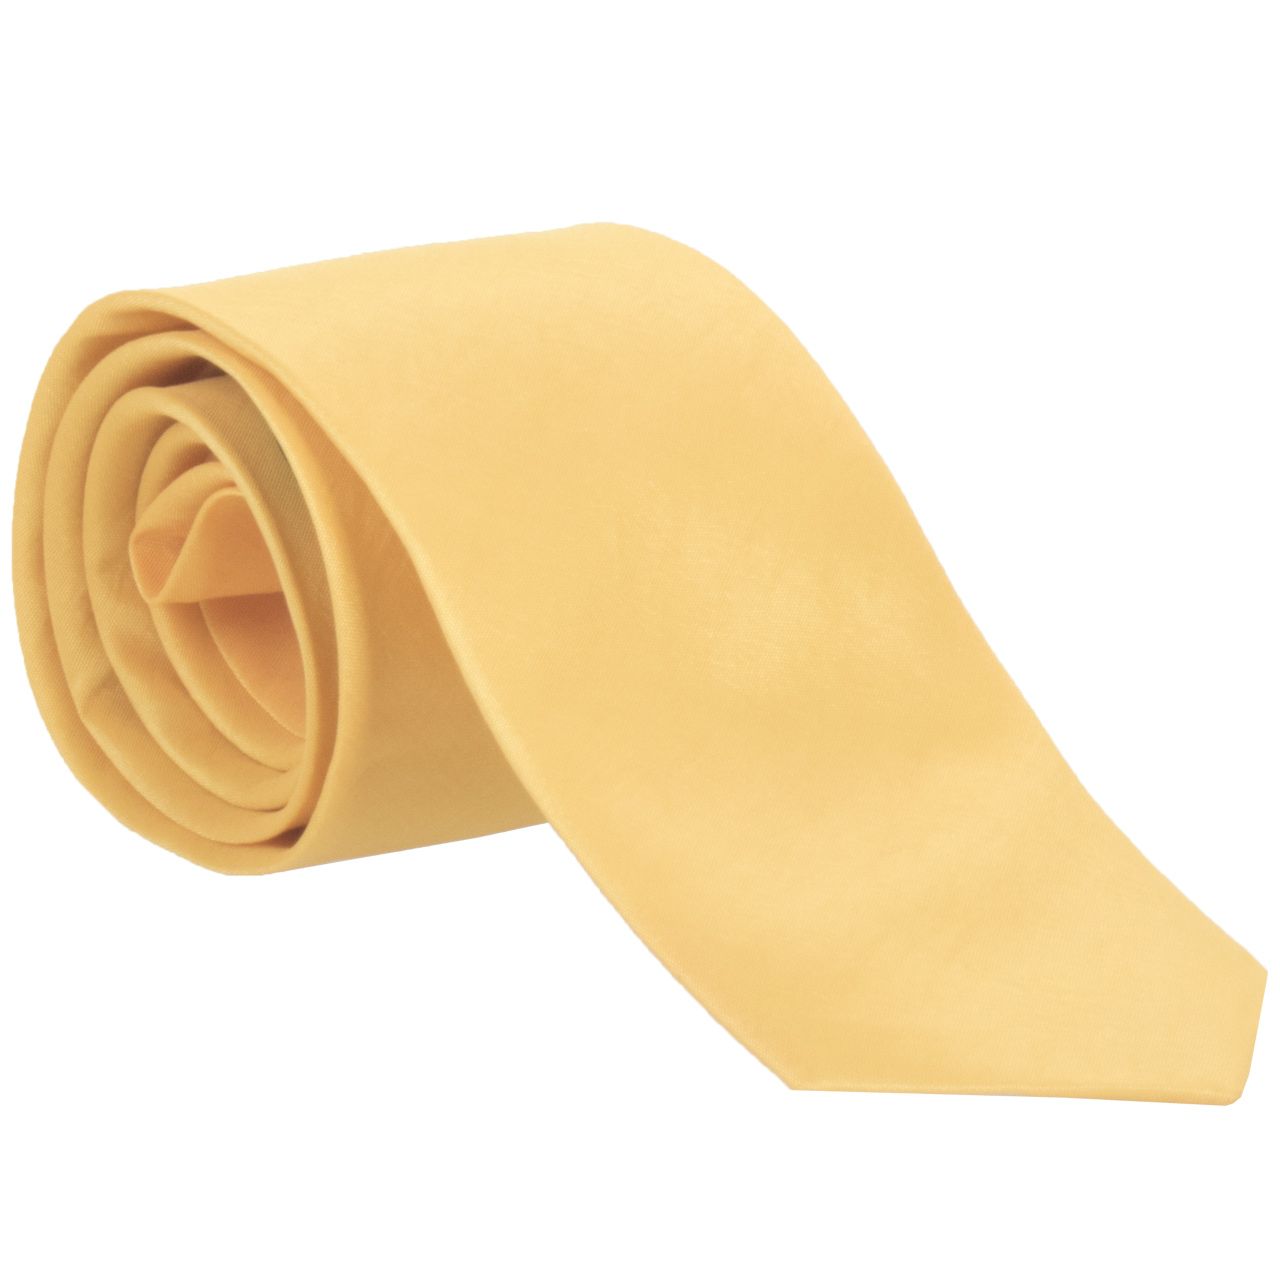 کراوات مردانه کد 785 -  - 1